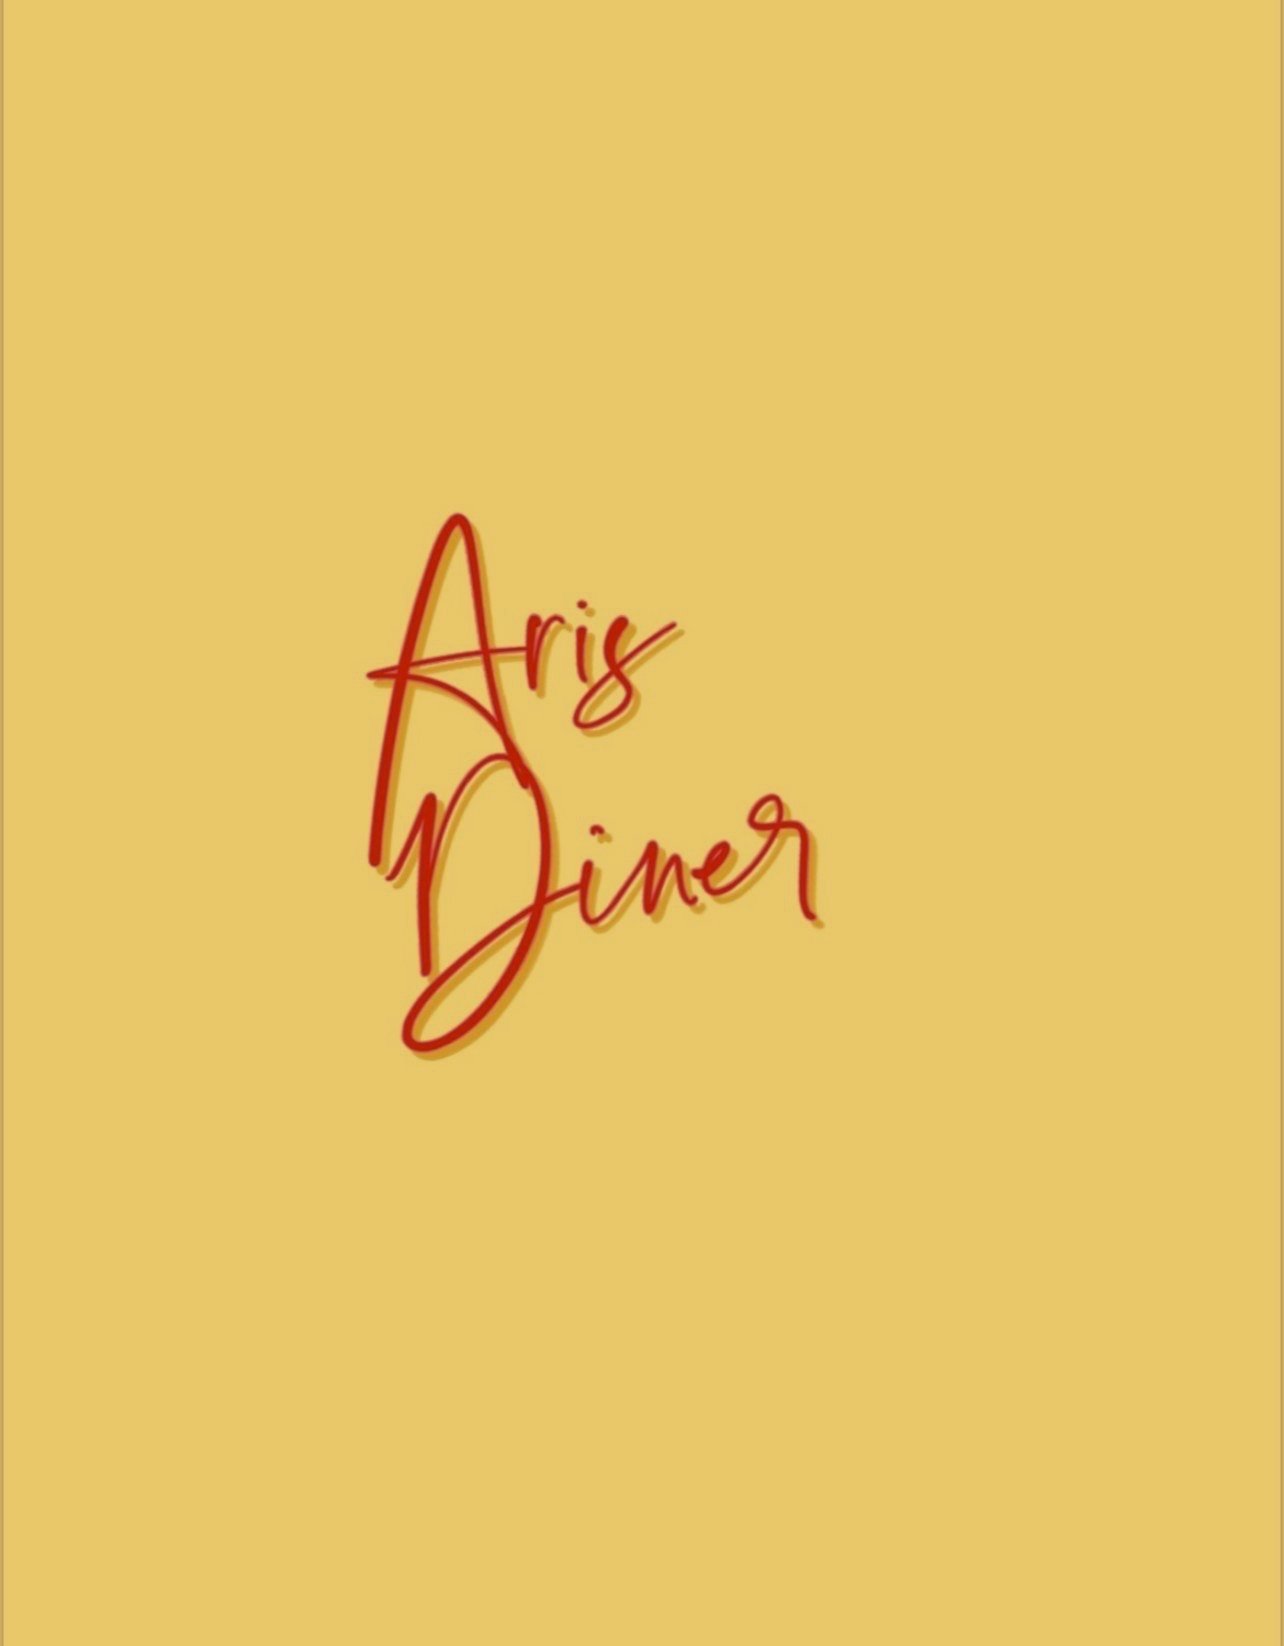 Aris Diner